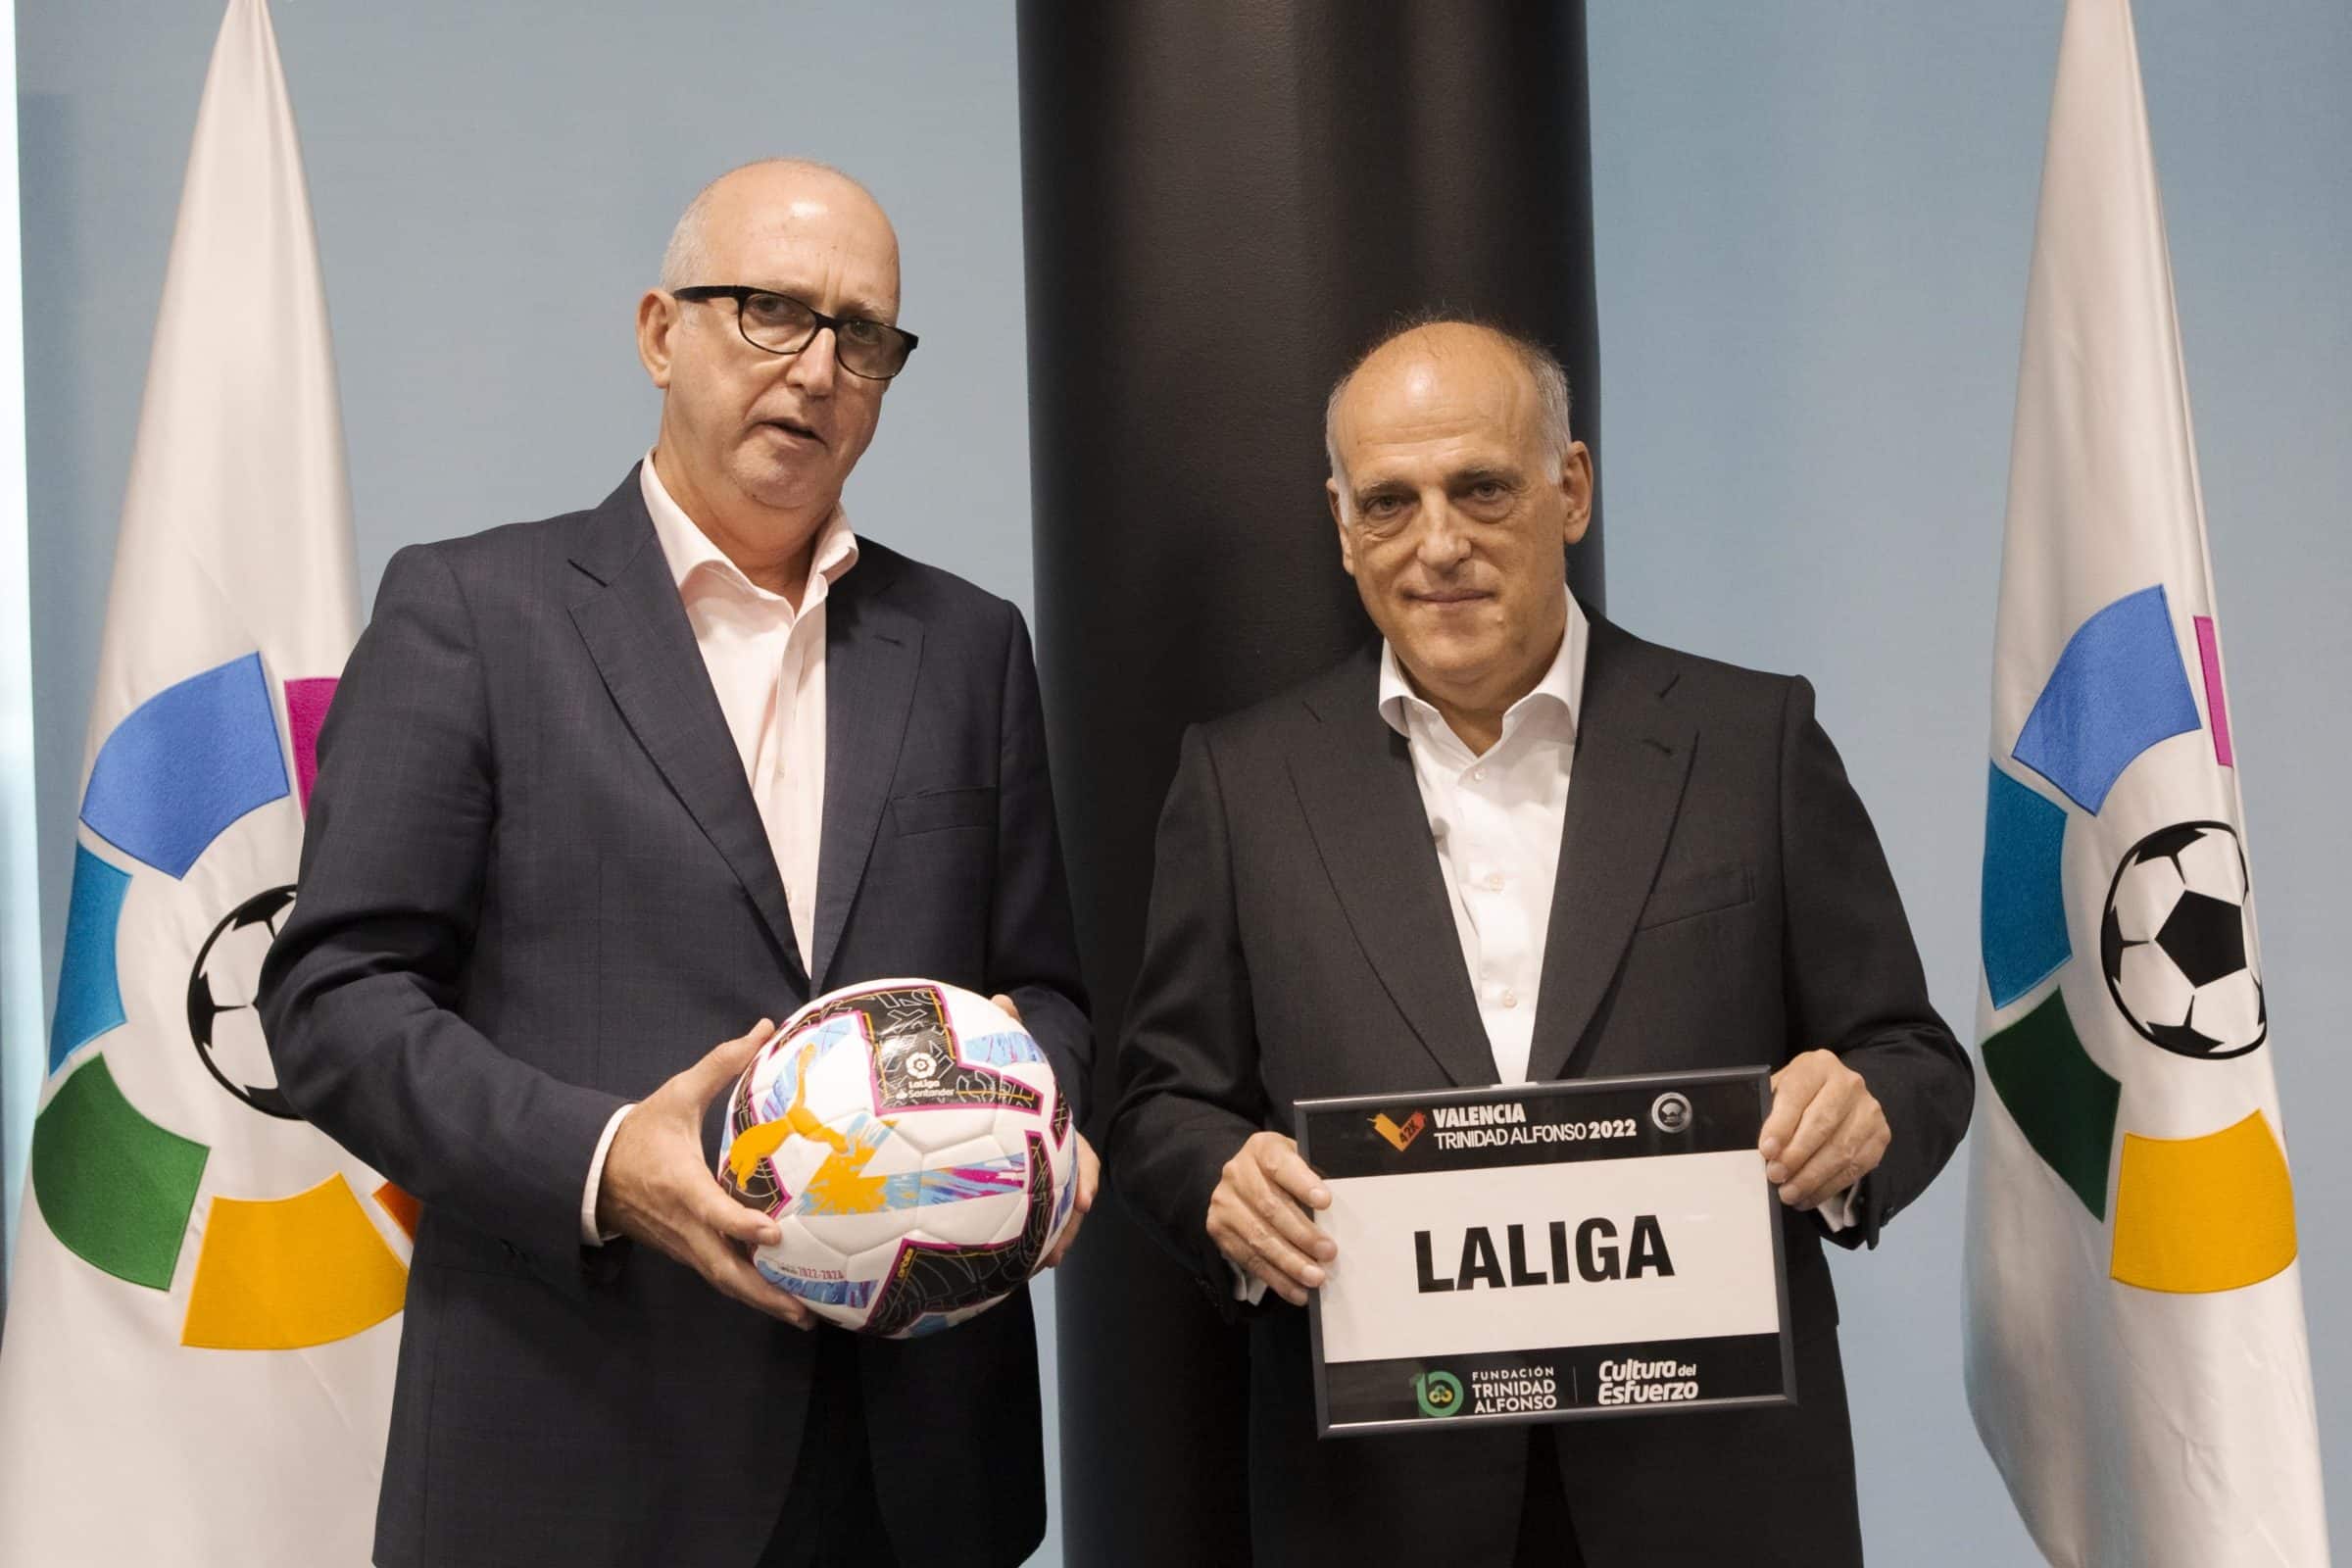 LaLiga y Fundación Trinidad Alfonso renuevan su acuerdo de colaboración para promocionar conjuntamente el deporte